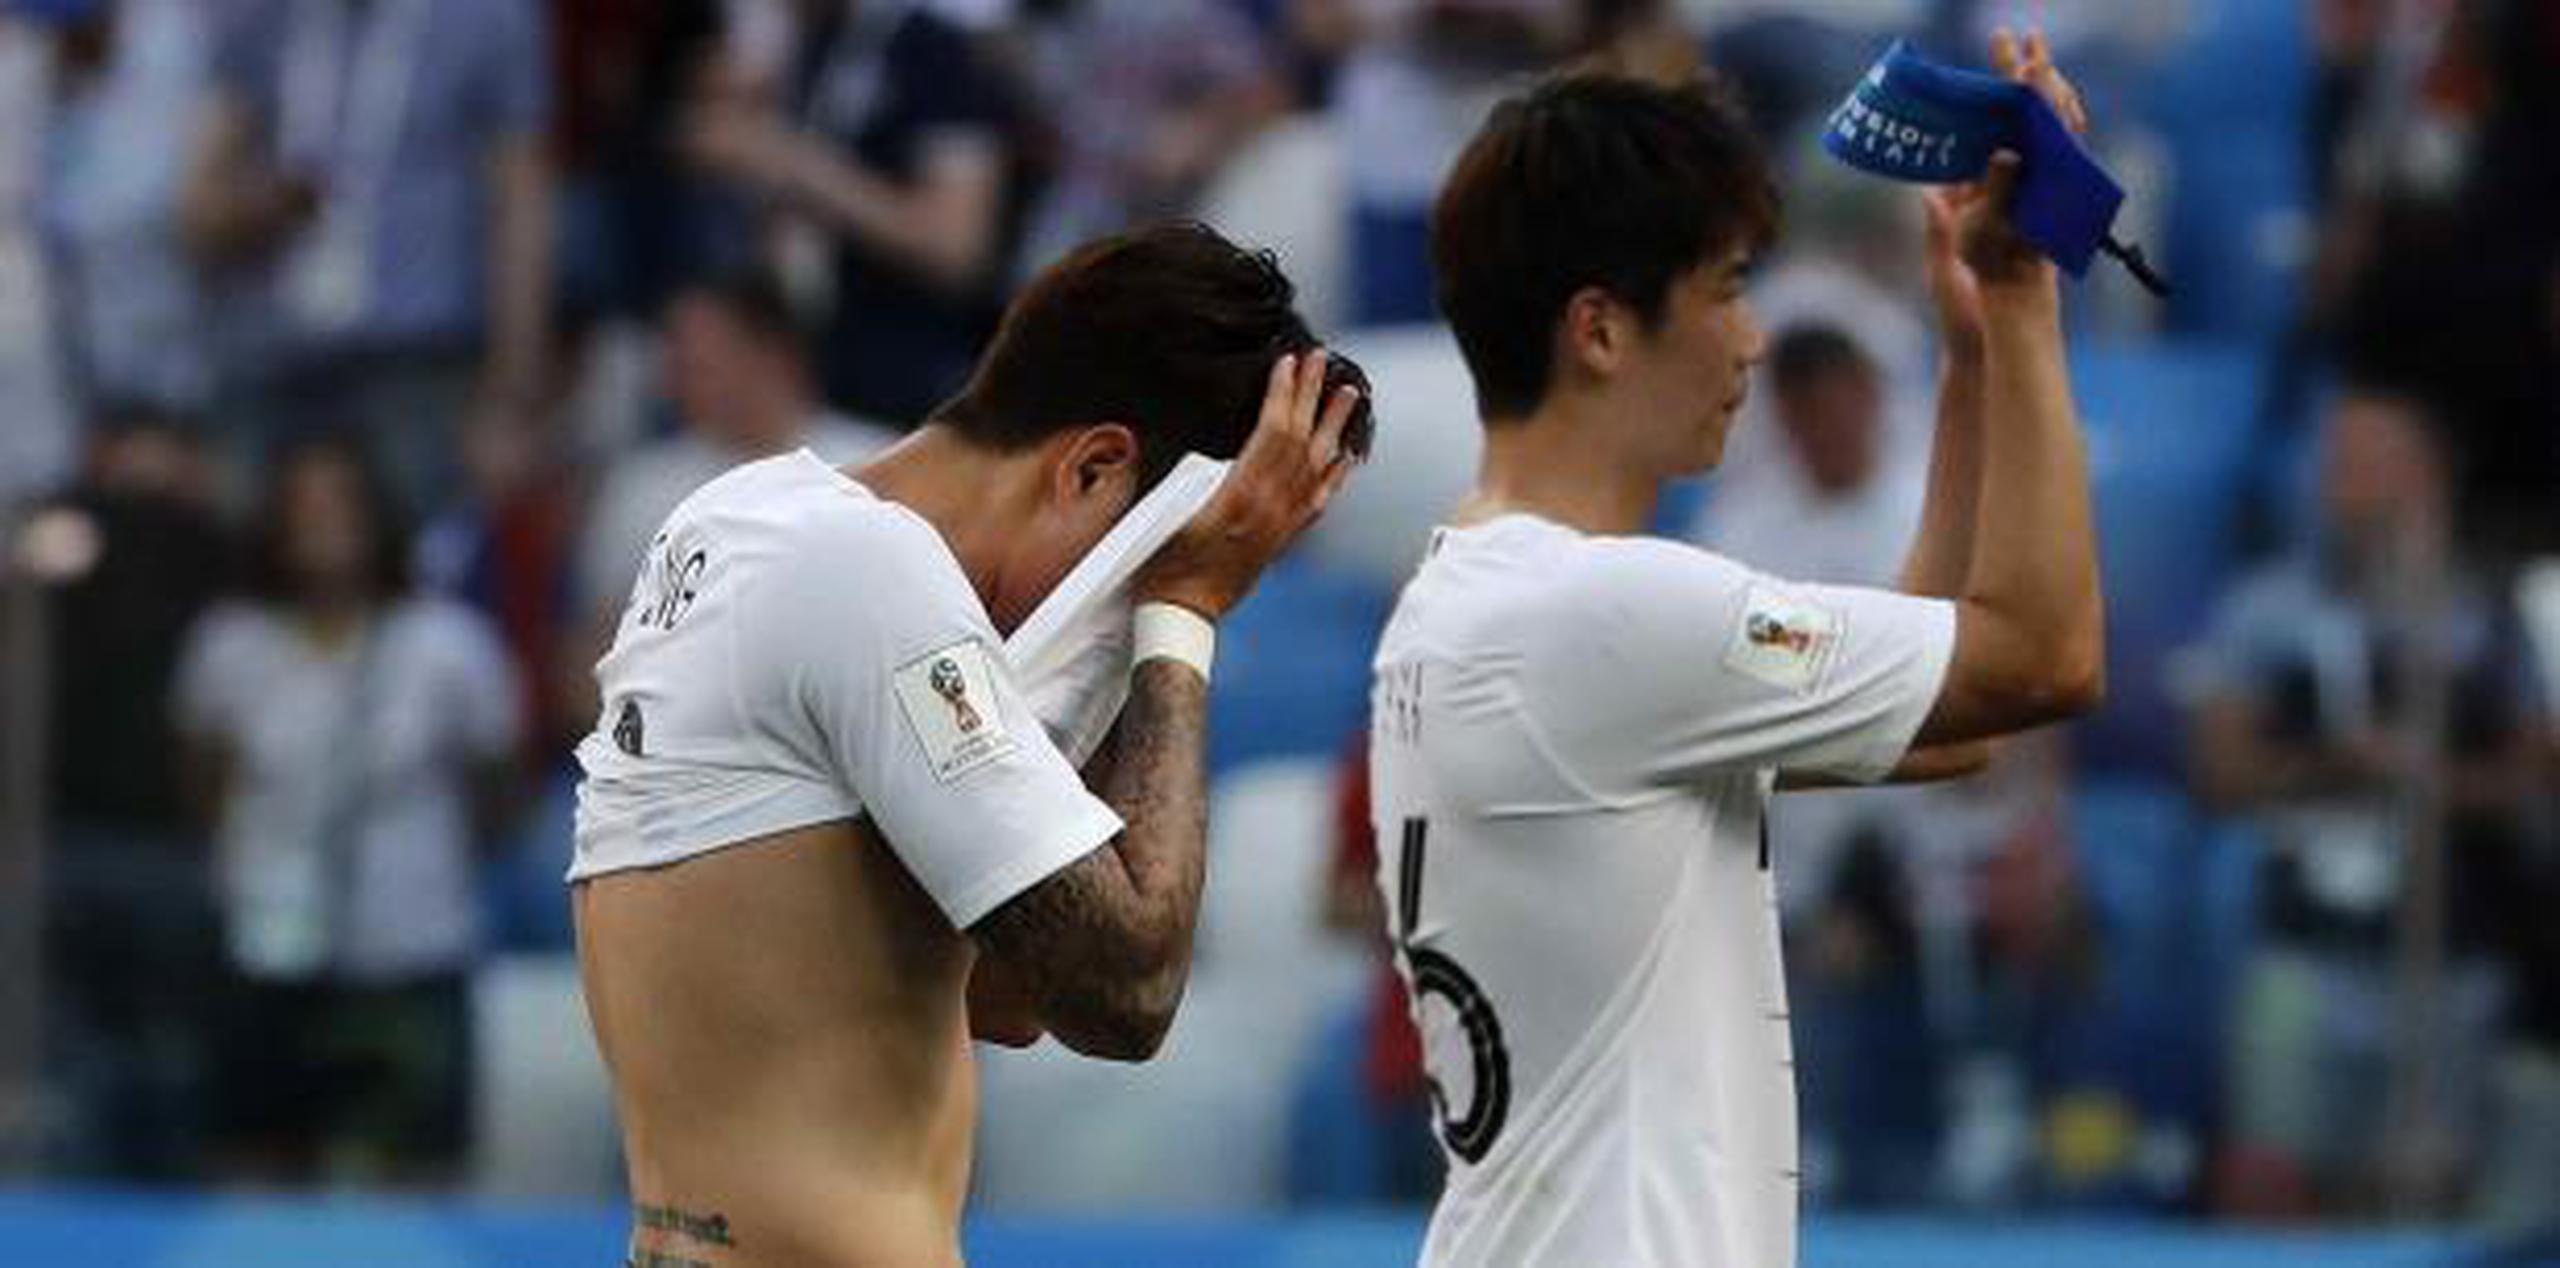 El surcoreano Son Heung-min (izquierda) se cubre la cara cuando abandona el terreno de juego después del partido del grupo F entre Suecia y Corea del Sur en la Copa. Corea perdió el partido 0-1. (AP)